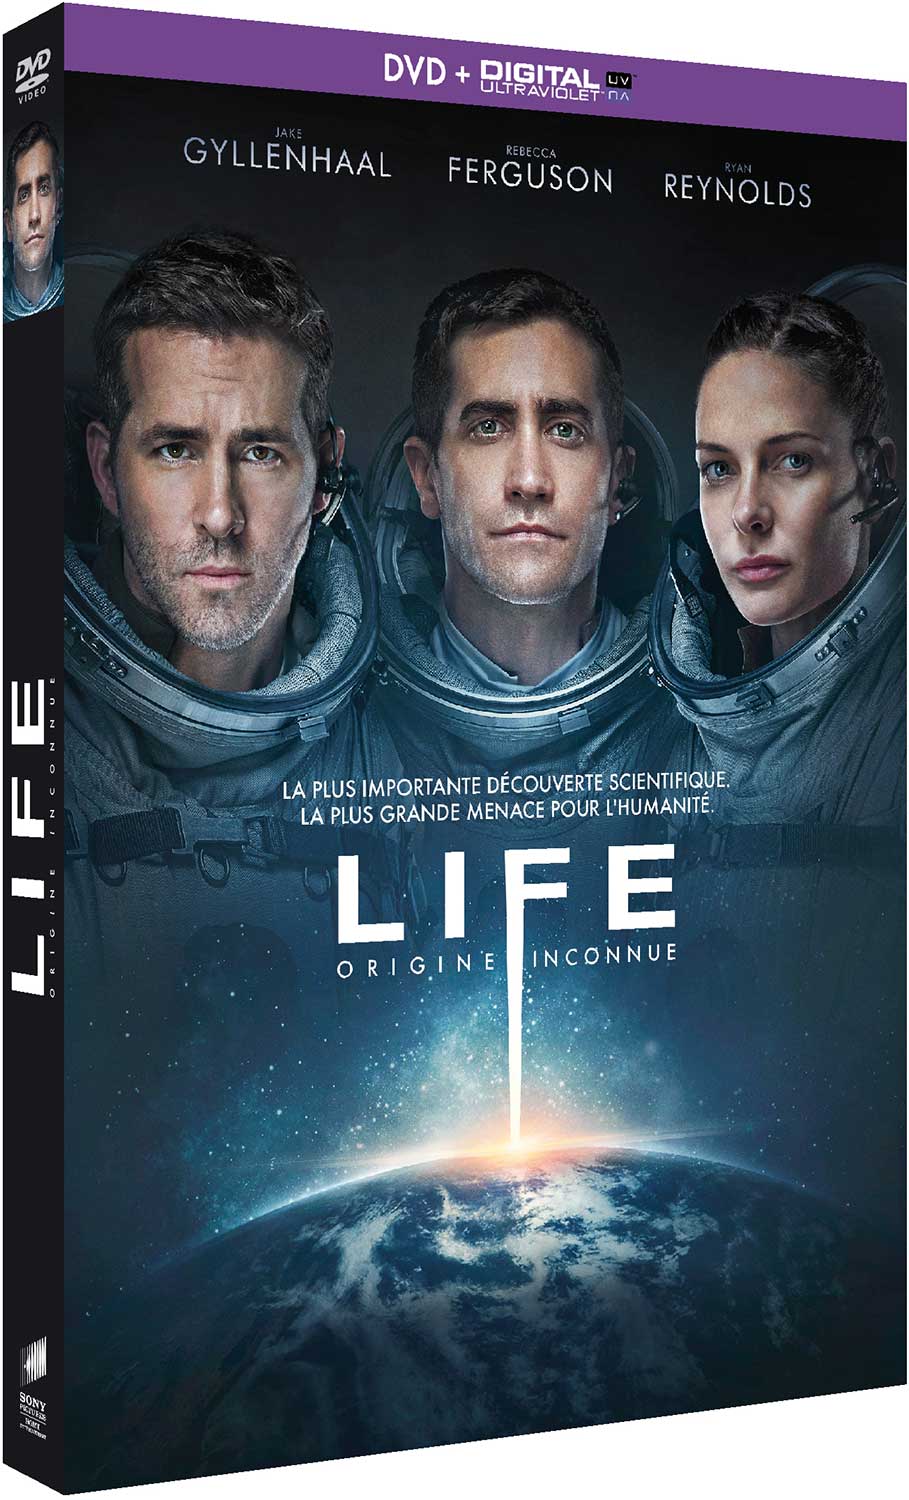 LIFE - ORIGINE INCONNUE - DVD